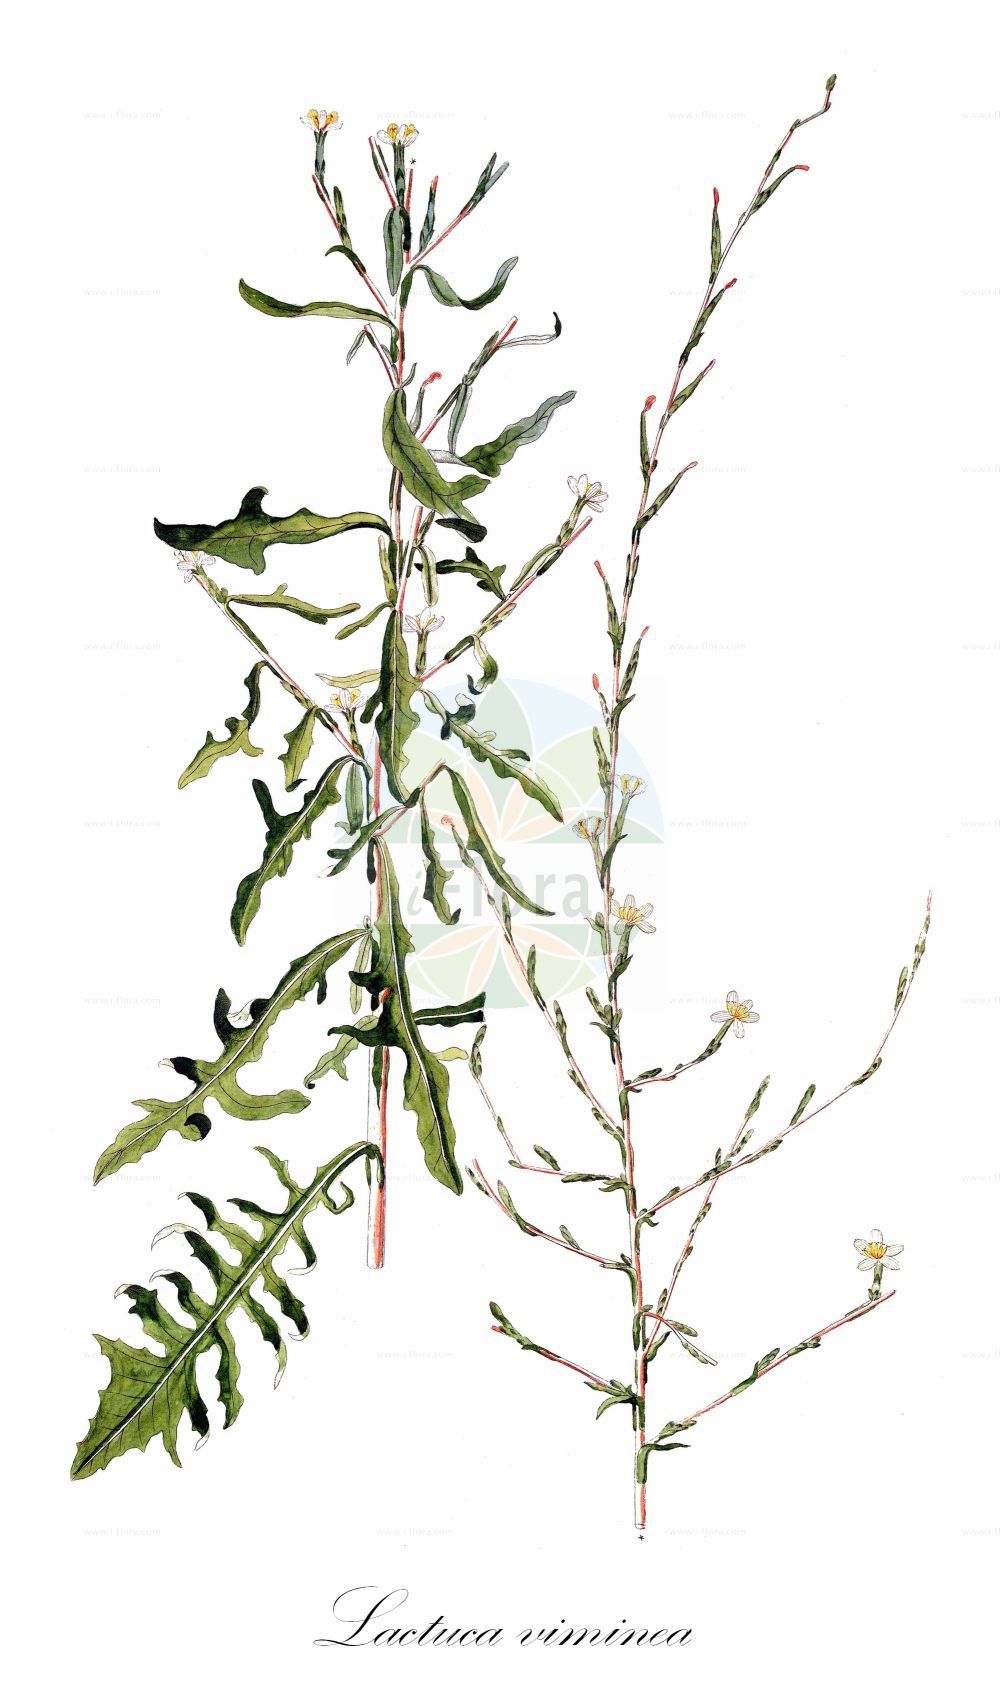 Historische Abbildung von Lactuca viminea (Ruten-Lattich - Pliant Lettuce). Das Bild zeigt Blatt, Bluete, Frucht und Same. ---- Historical Drawing of Lactuca viminea (Ruten-Lattich - Pliant Lettuce). The image is showing leaf, flower, fruit and seed.(Lactuca viminea,Ruten-Lattich,Pliant Lettuce,Lactuca contracta,Lactuca numidica,Lactuca viminea,Prenanthes viminea,Scariola contracta,Scariola viminea,Ruten-Lattich,Pliant Lettuce,Lactuca,Lattich,Lettuce,Asteraceae,Korbblütengewächse,Daisy family,Blatt,Bluete,Frucht,Same,leaf,flower,fruit,seed)